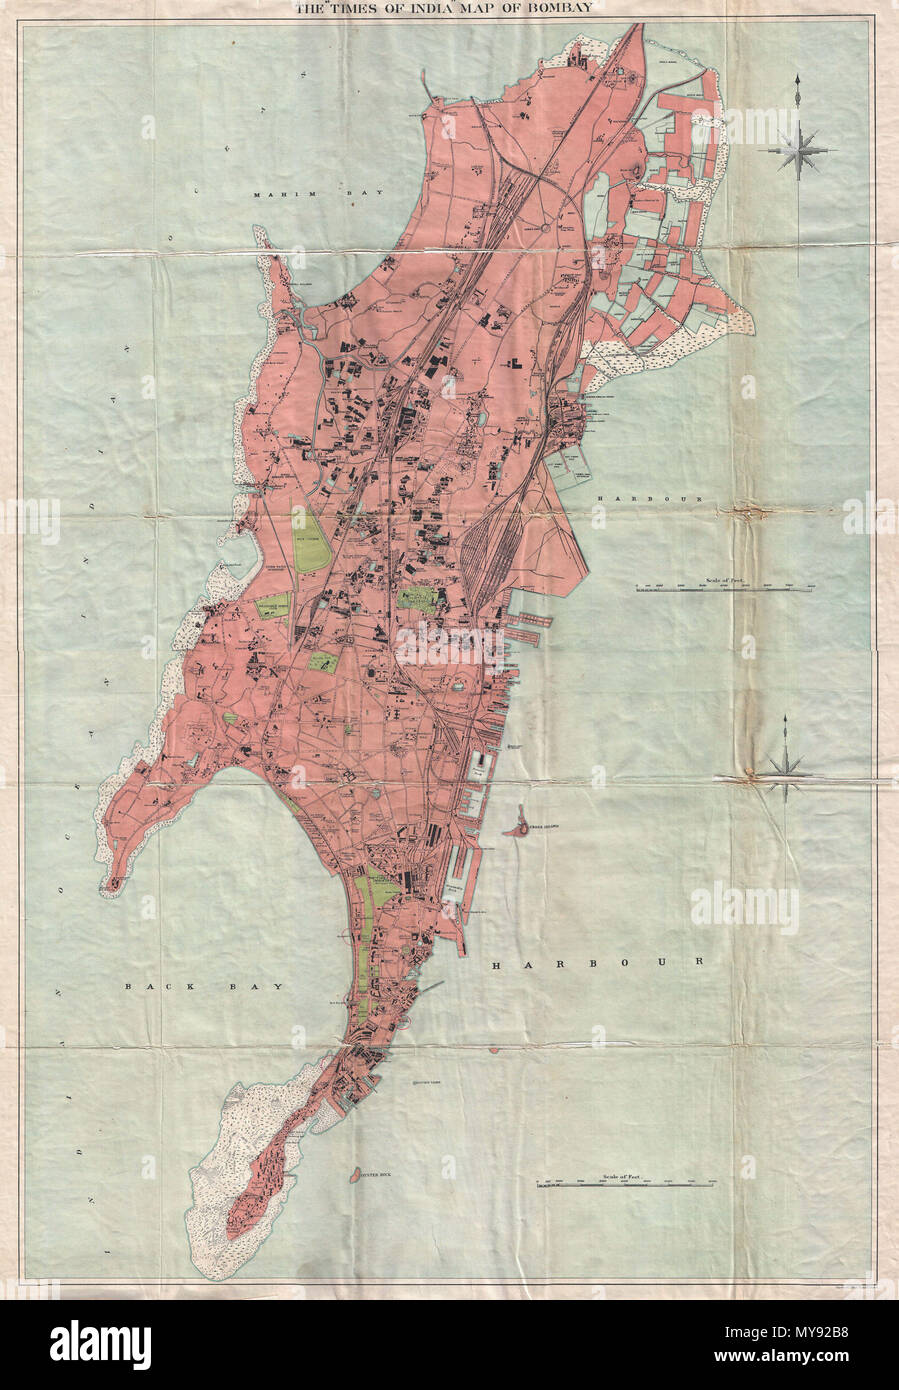 Die Times Of India Karte Von Bombay Englisch Dies Ist Ein Sehr